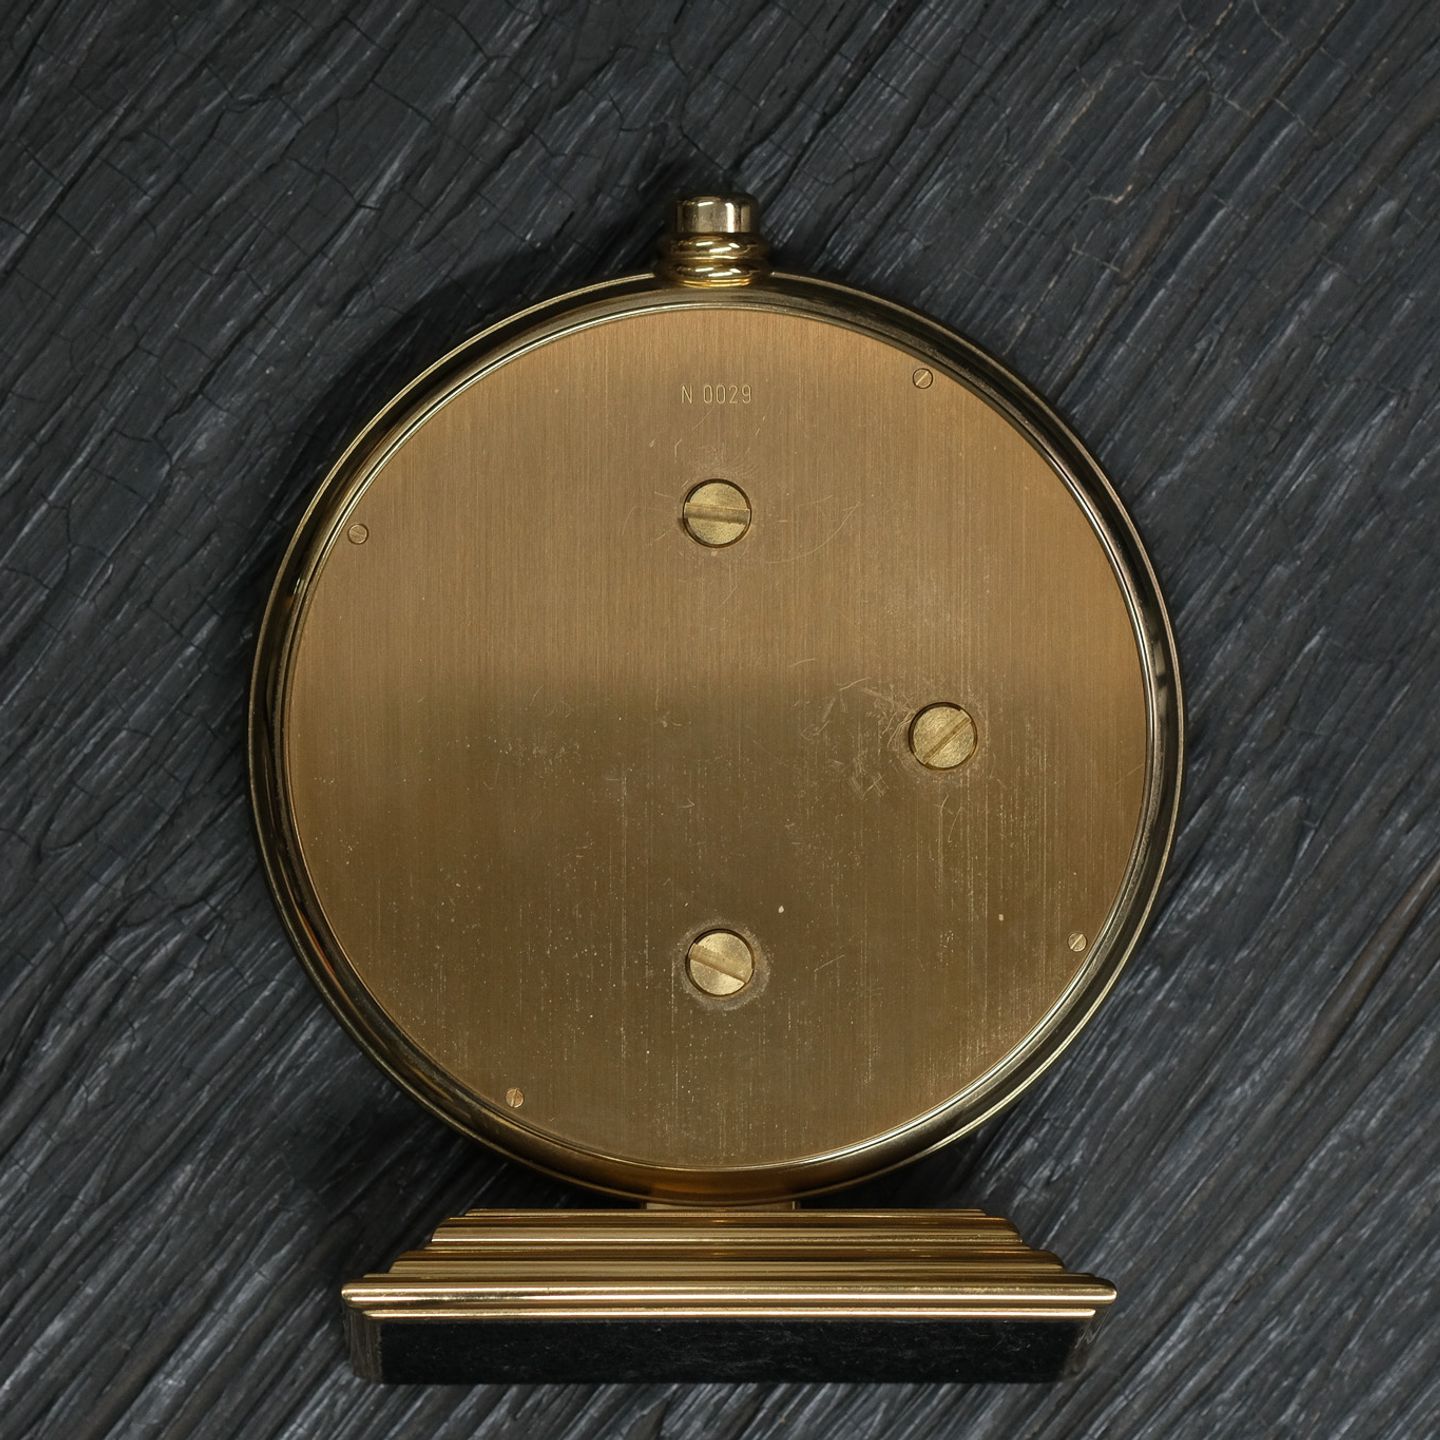 Audemars Piguet Unknown 2100 (Unknown (random serial)) - White dial 40 mm Gold/Steel case (2/8)